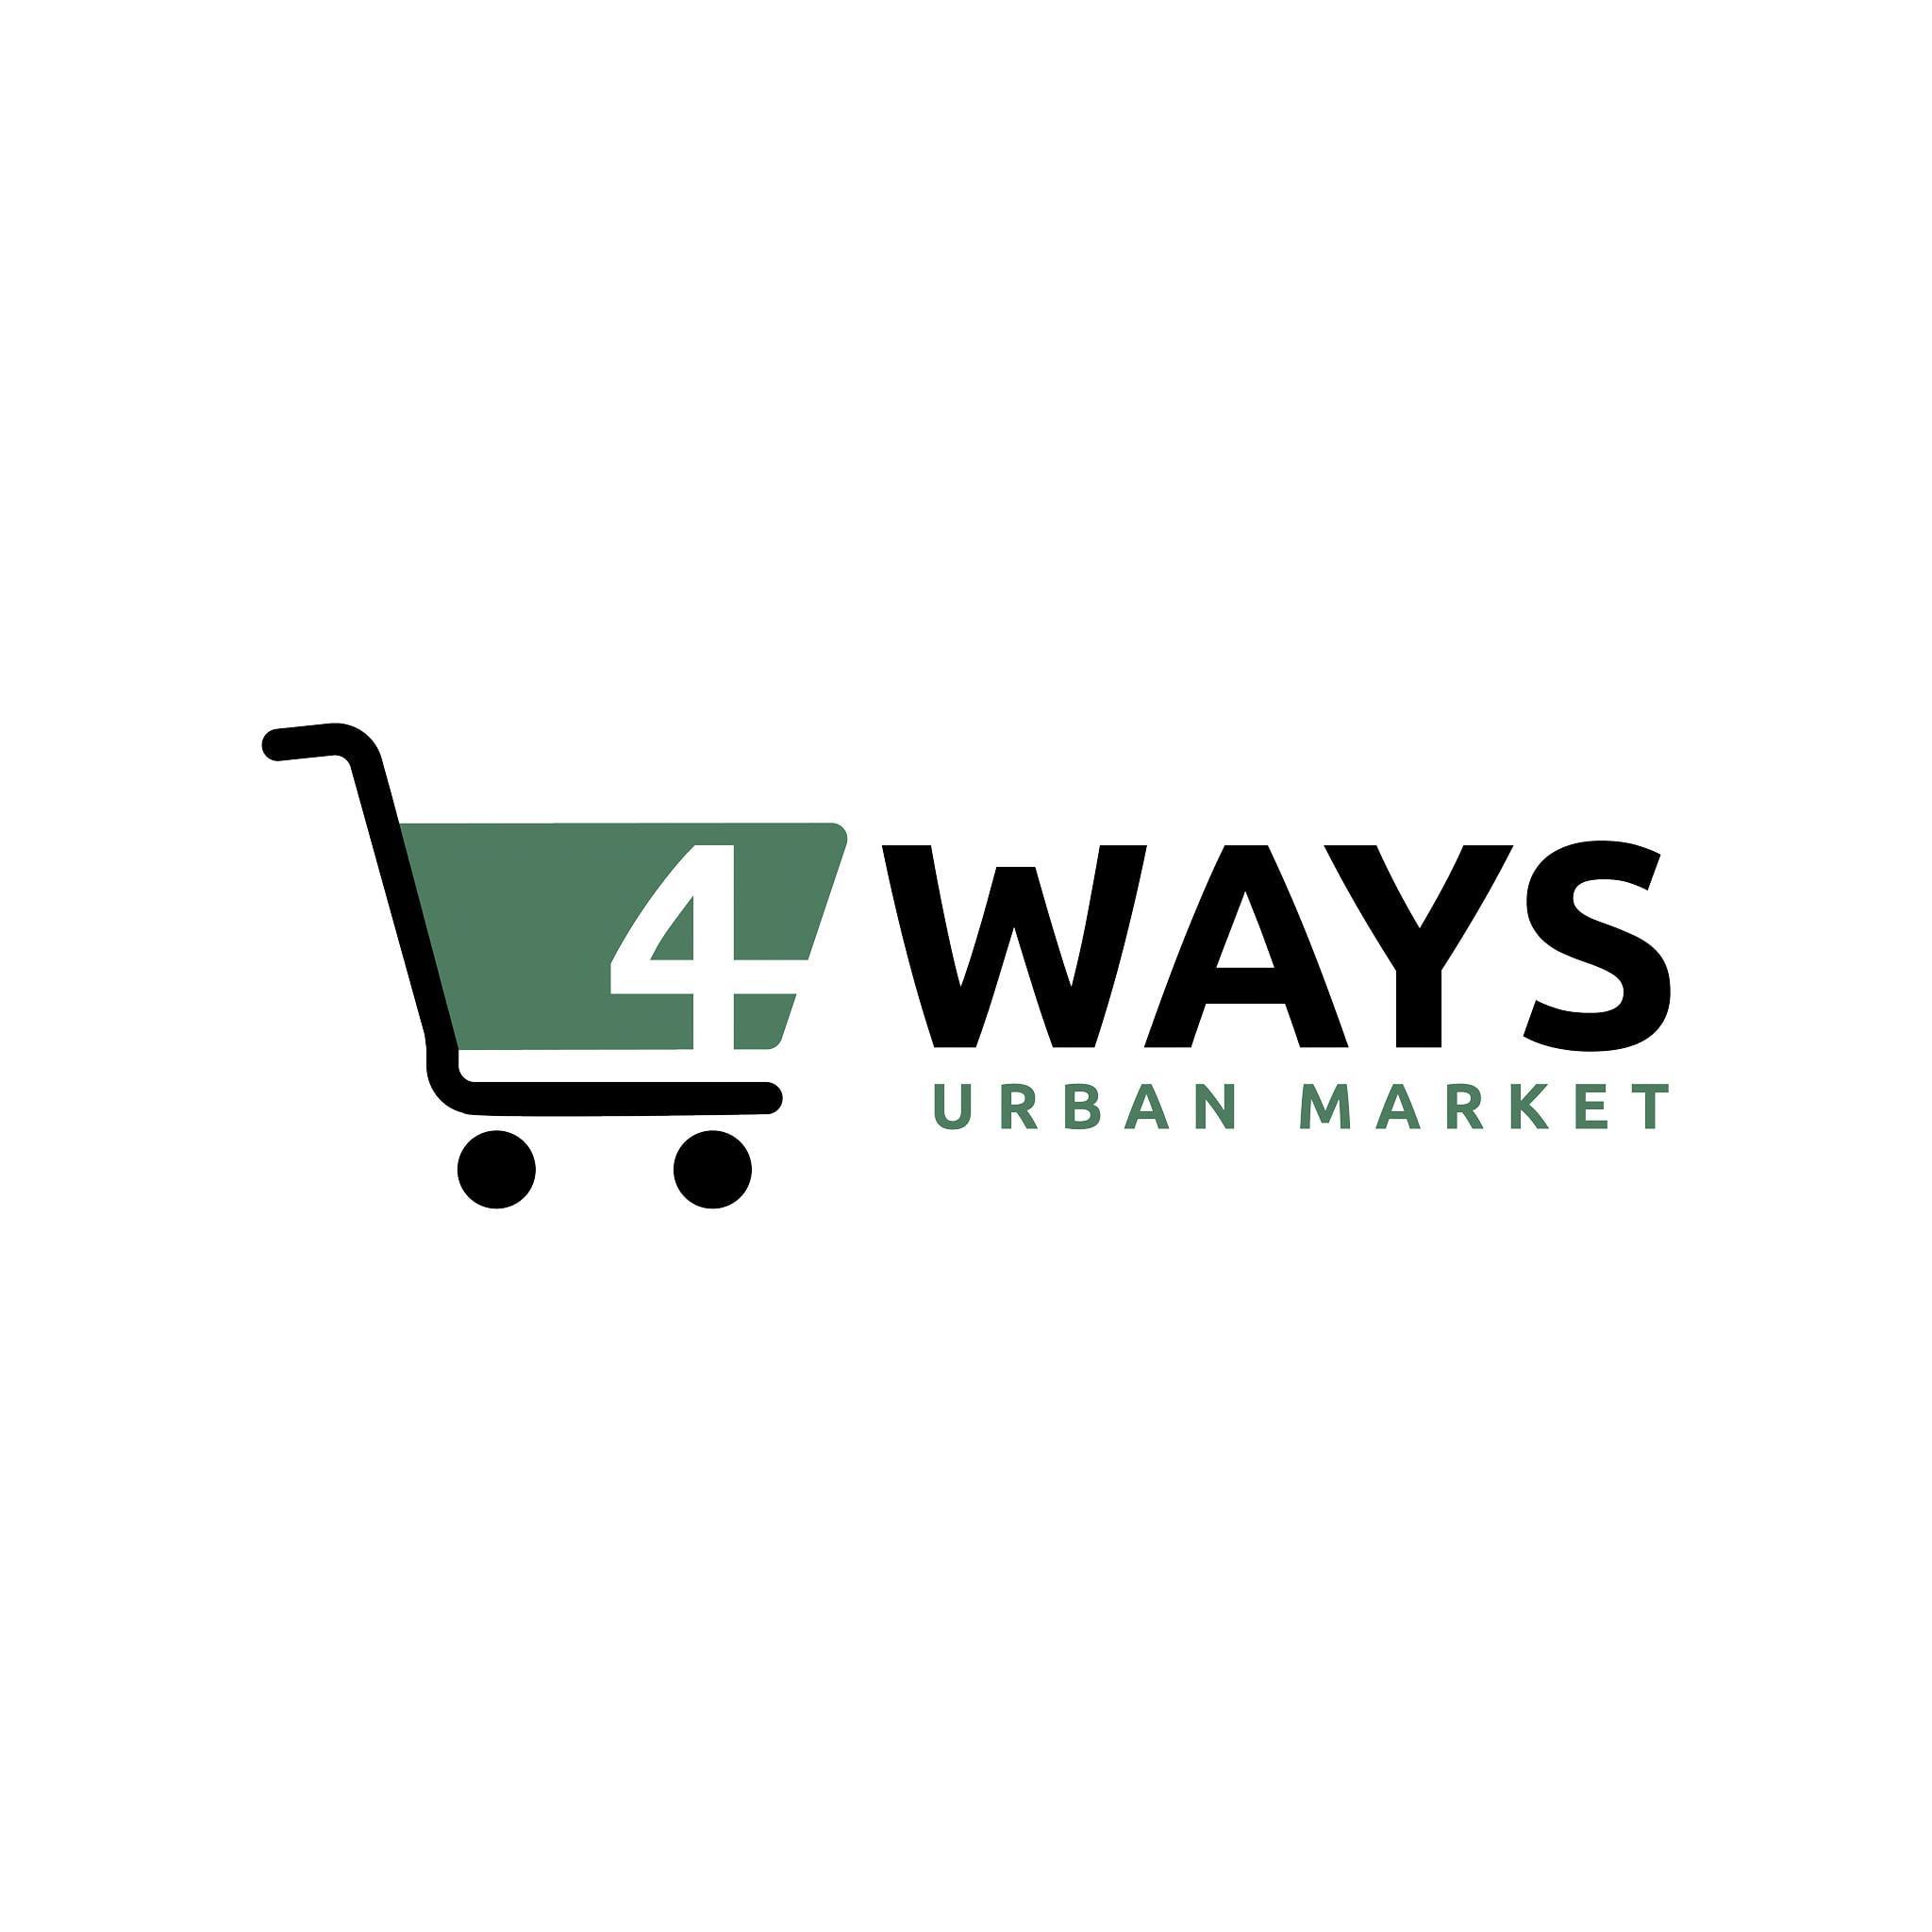 4 Ways Urban Market